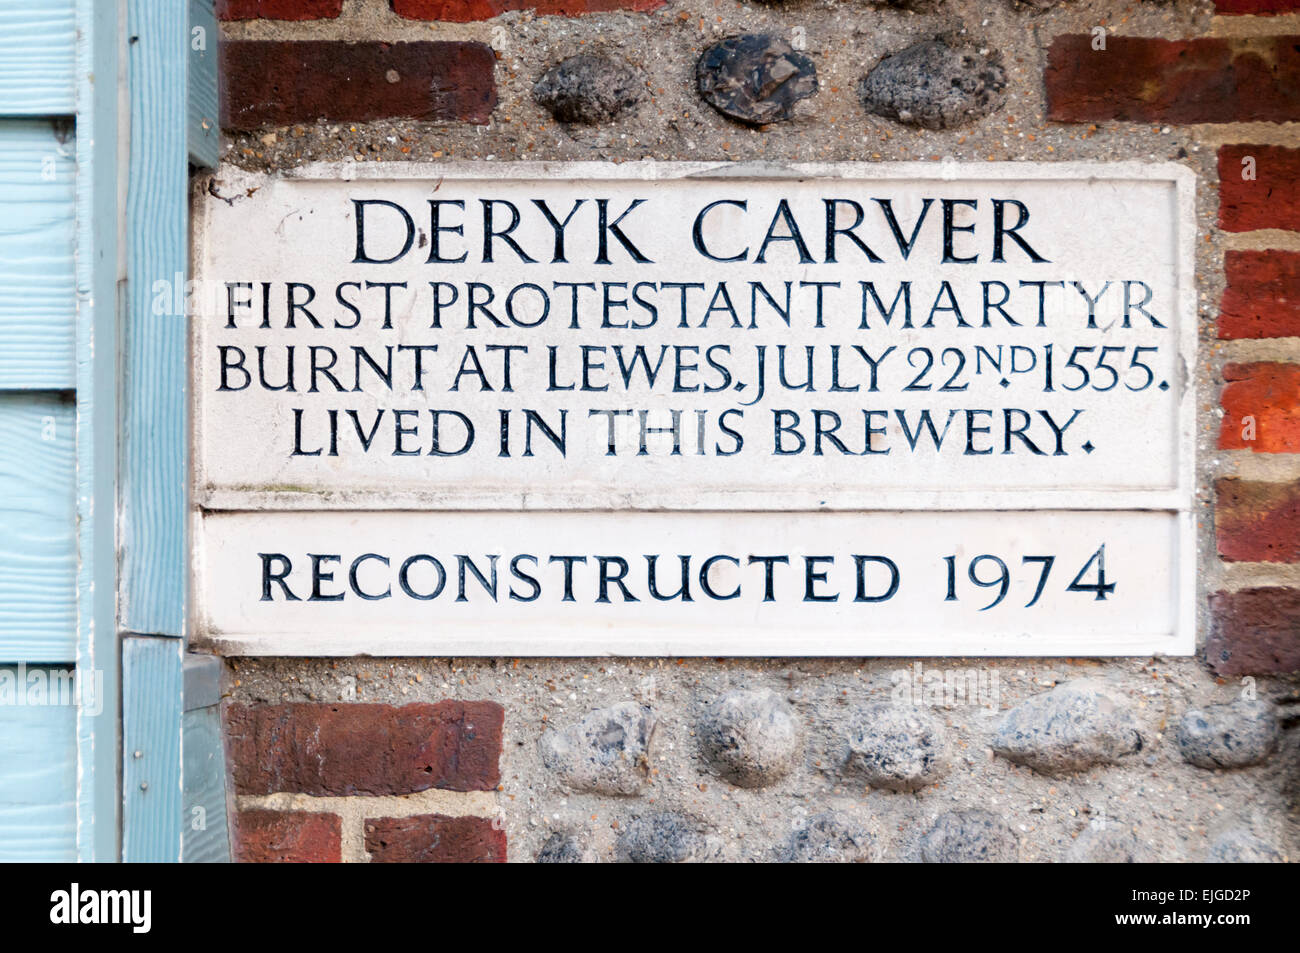 Placa conmemorativa a la mártir protestante, Deryk Carver, en Black Lion Street, Brighton. Foto de stock